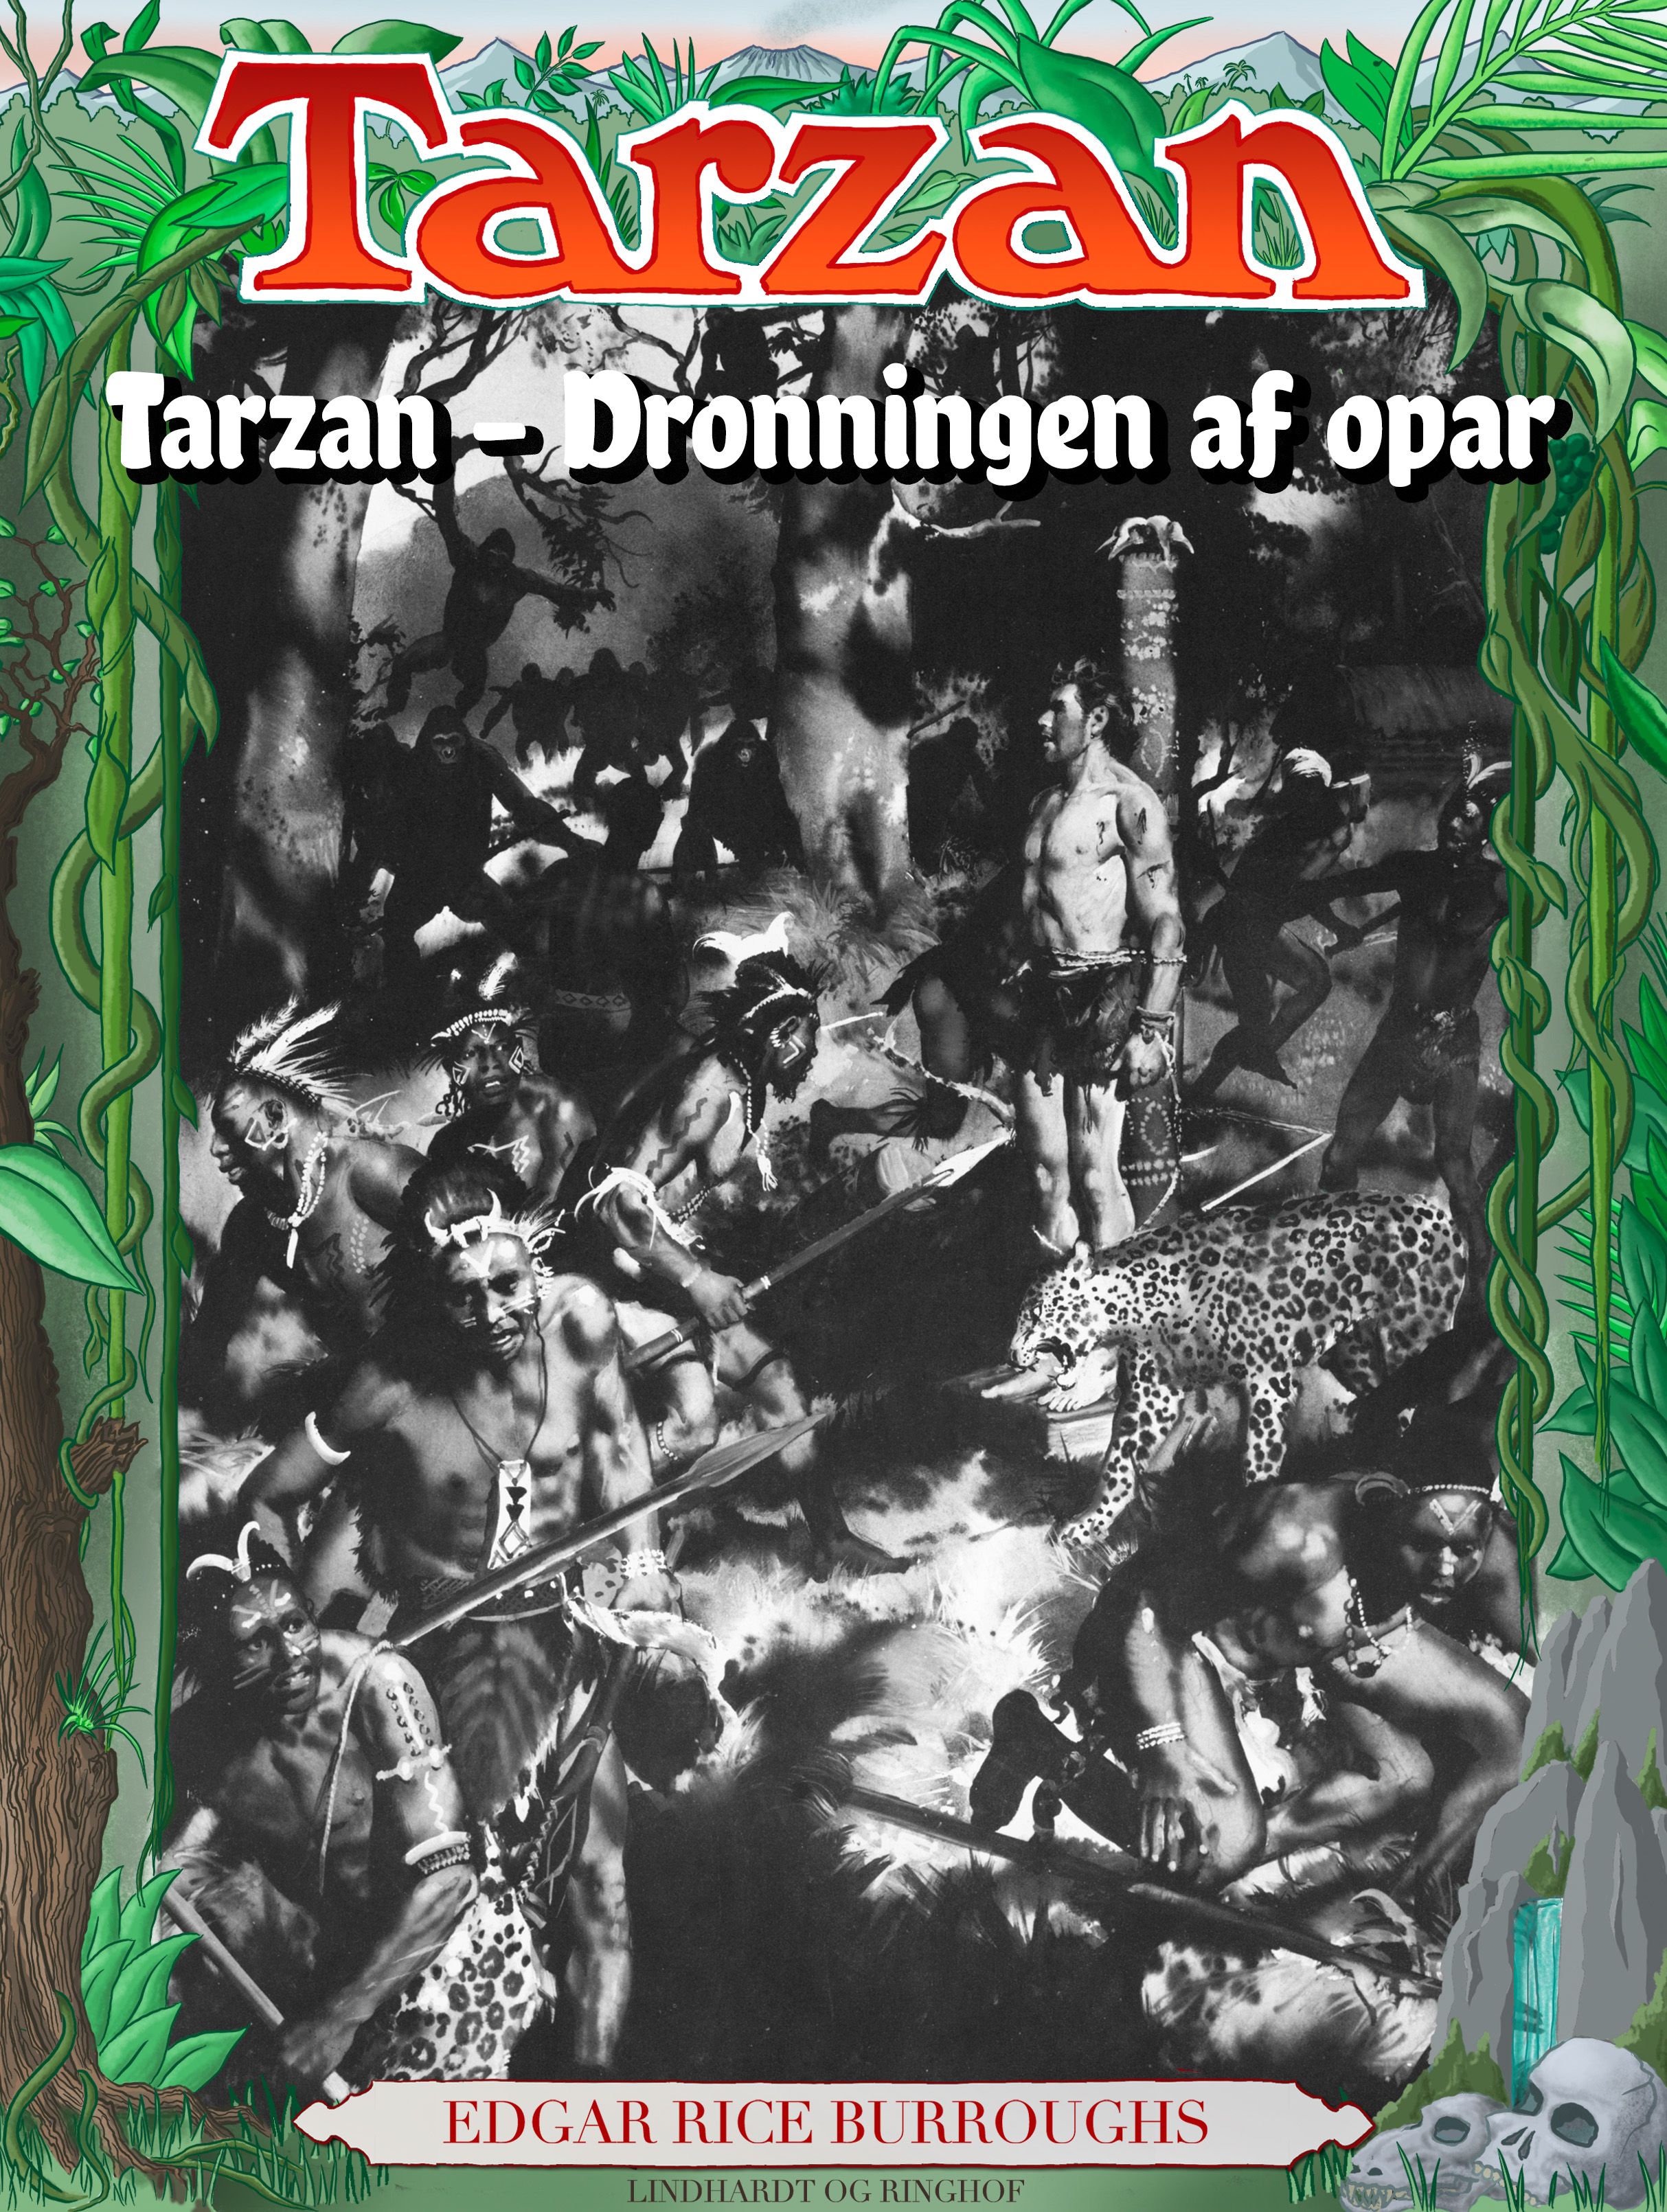 Tarzan - Dronningen af opar, e-bog af Edgar Rice Burroughs